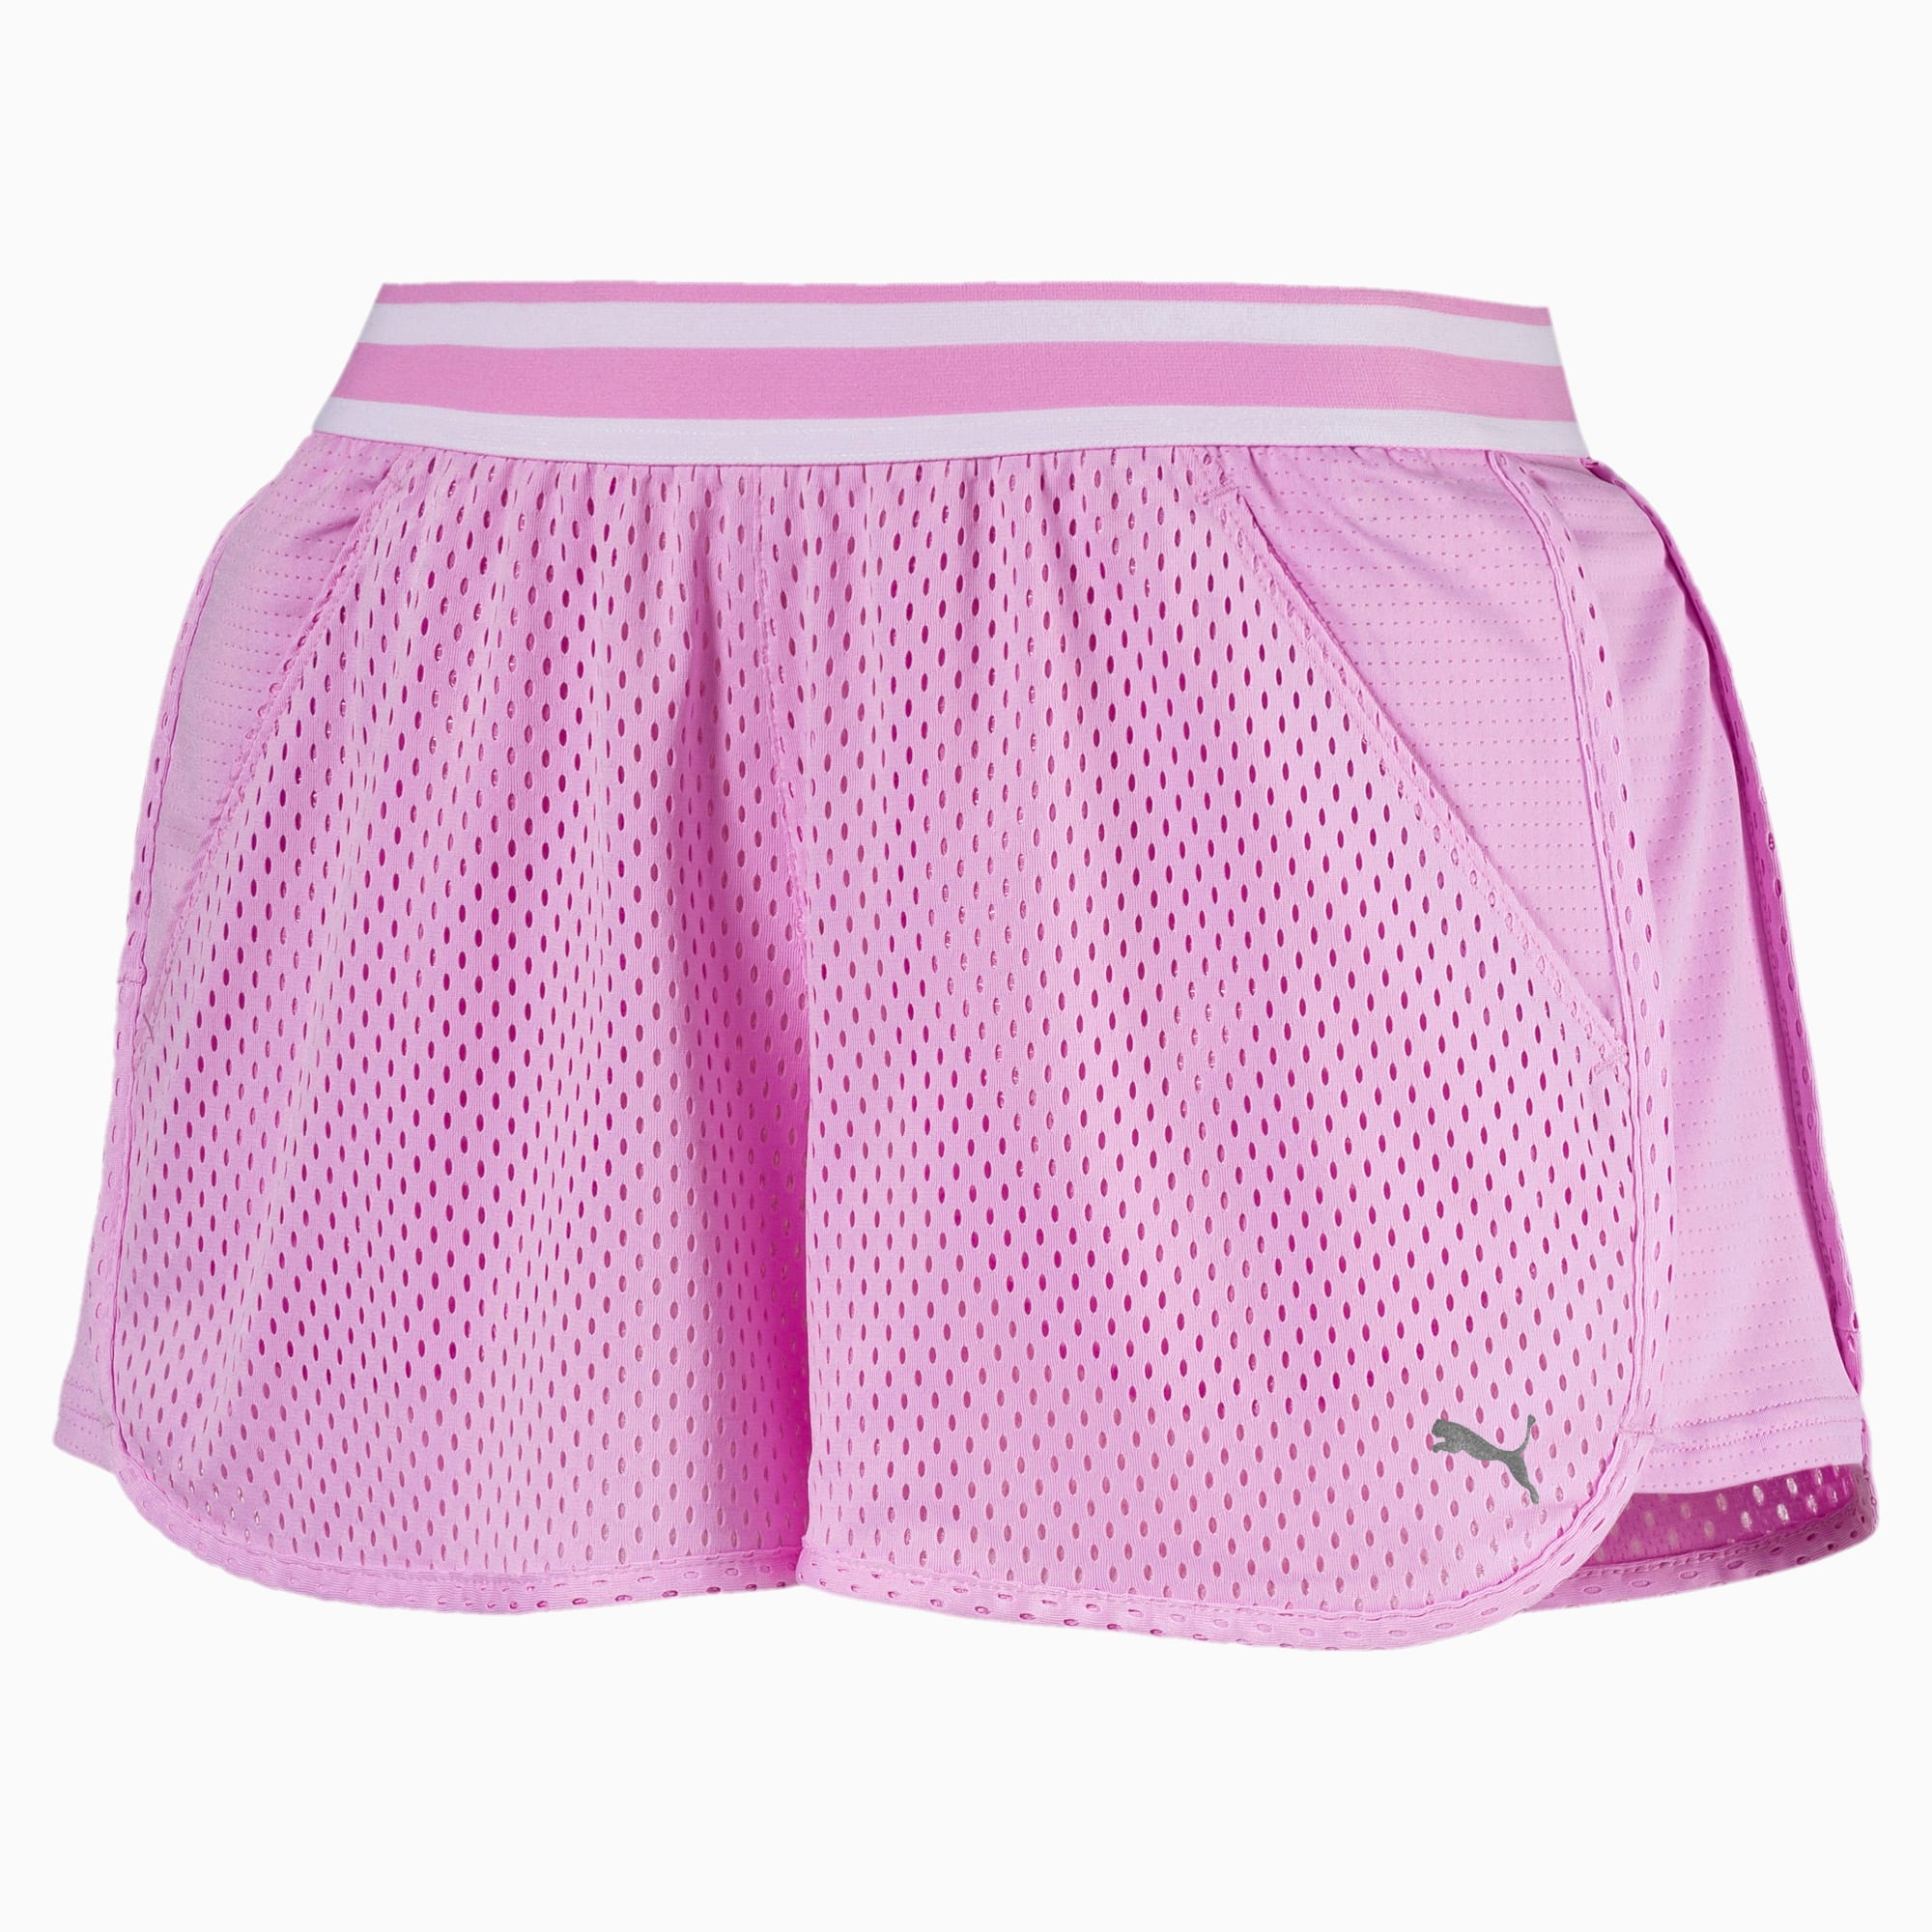 puma mesh shorts